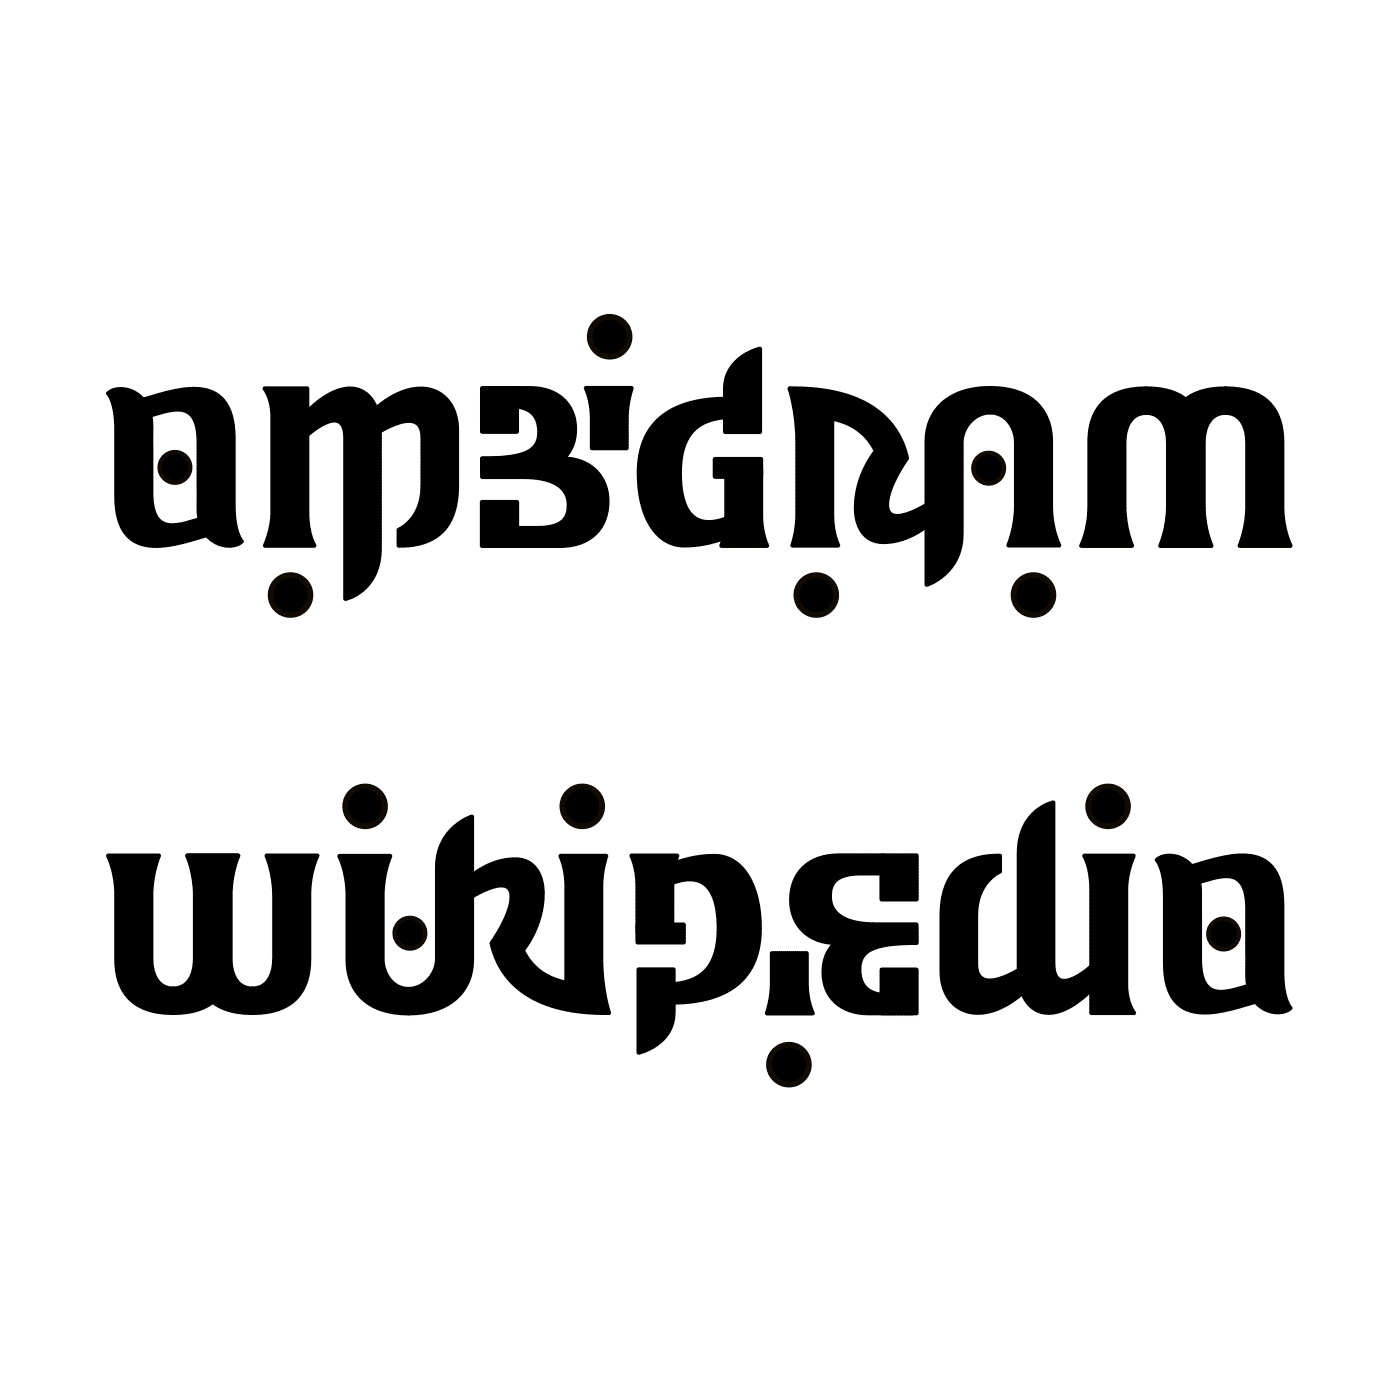 ambigram wikipedia